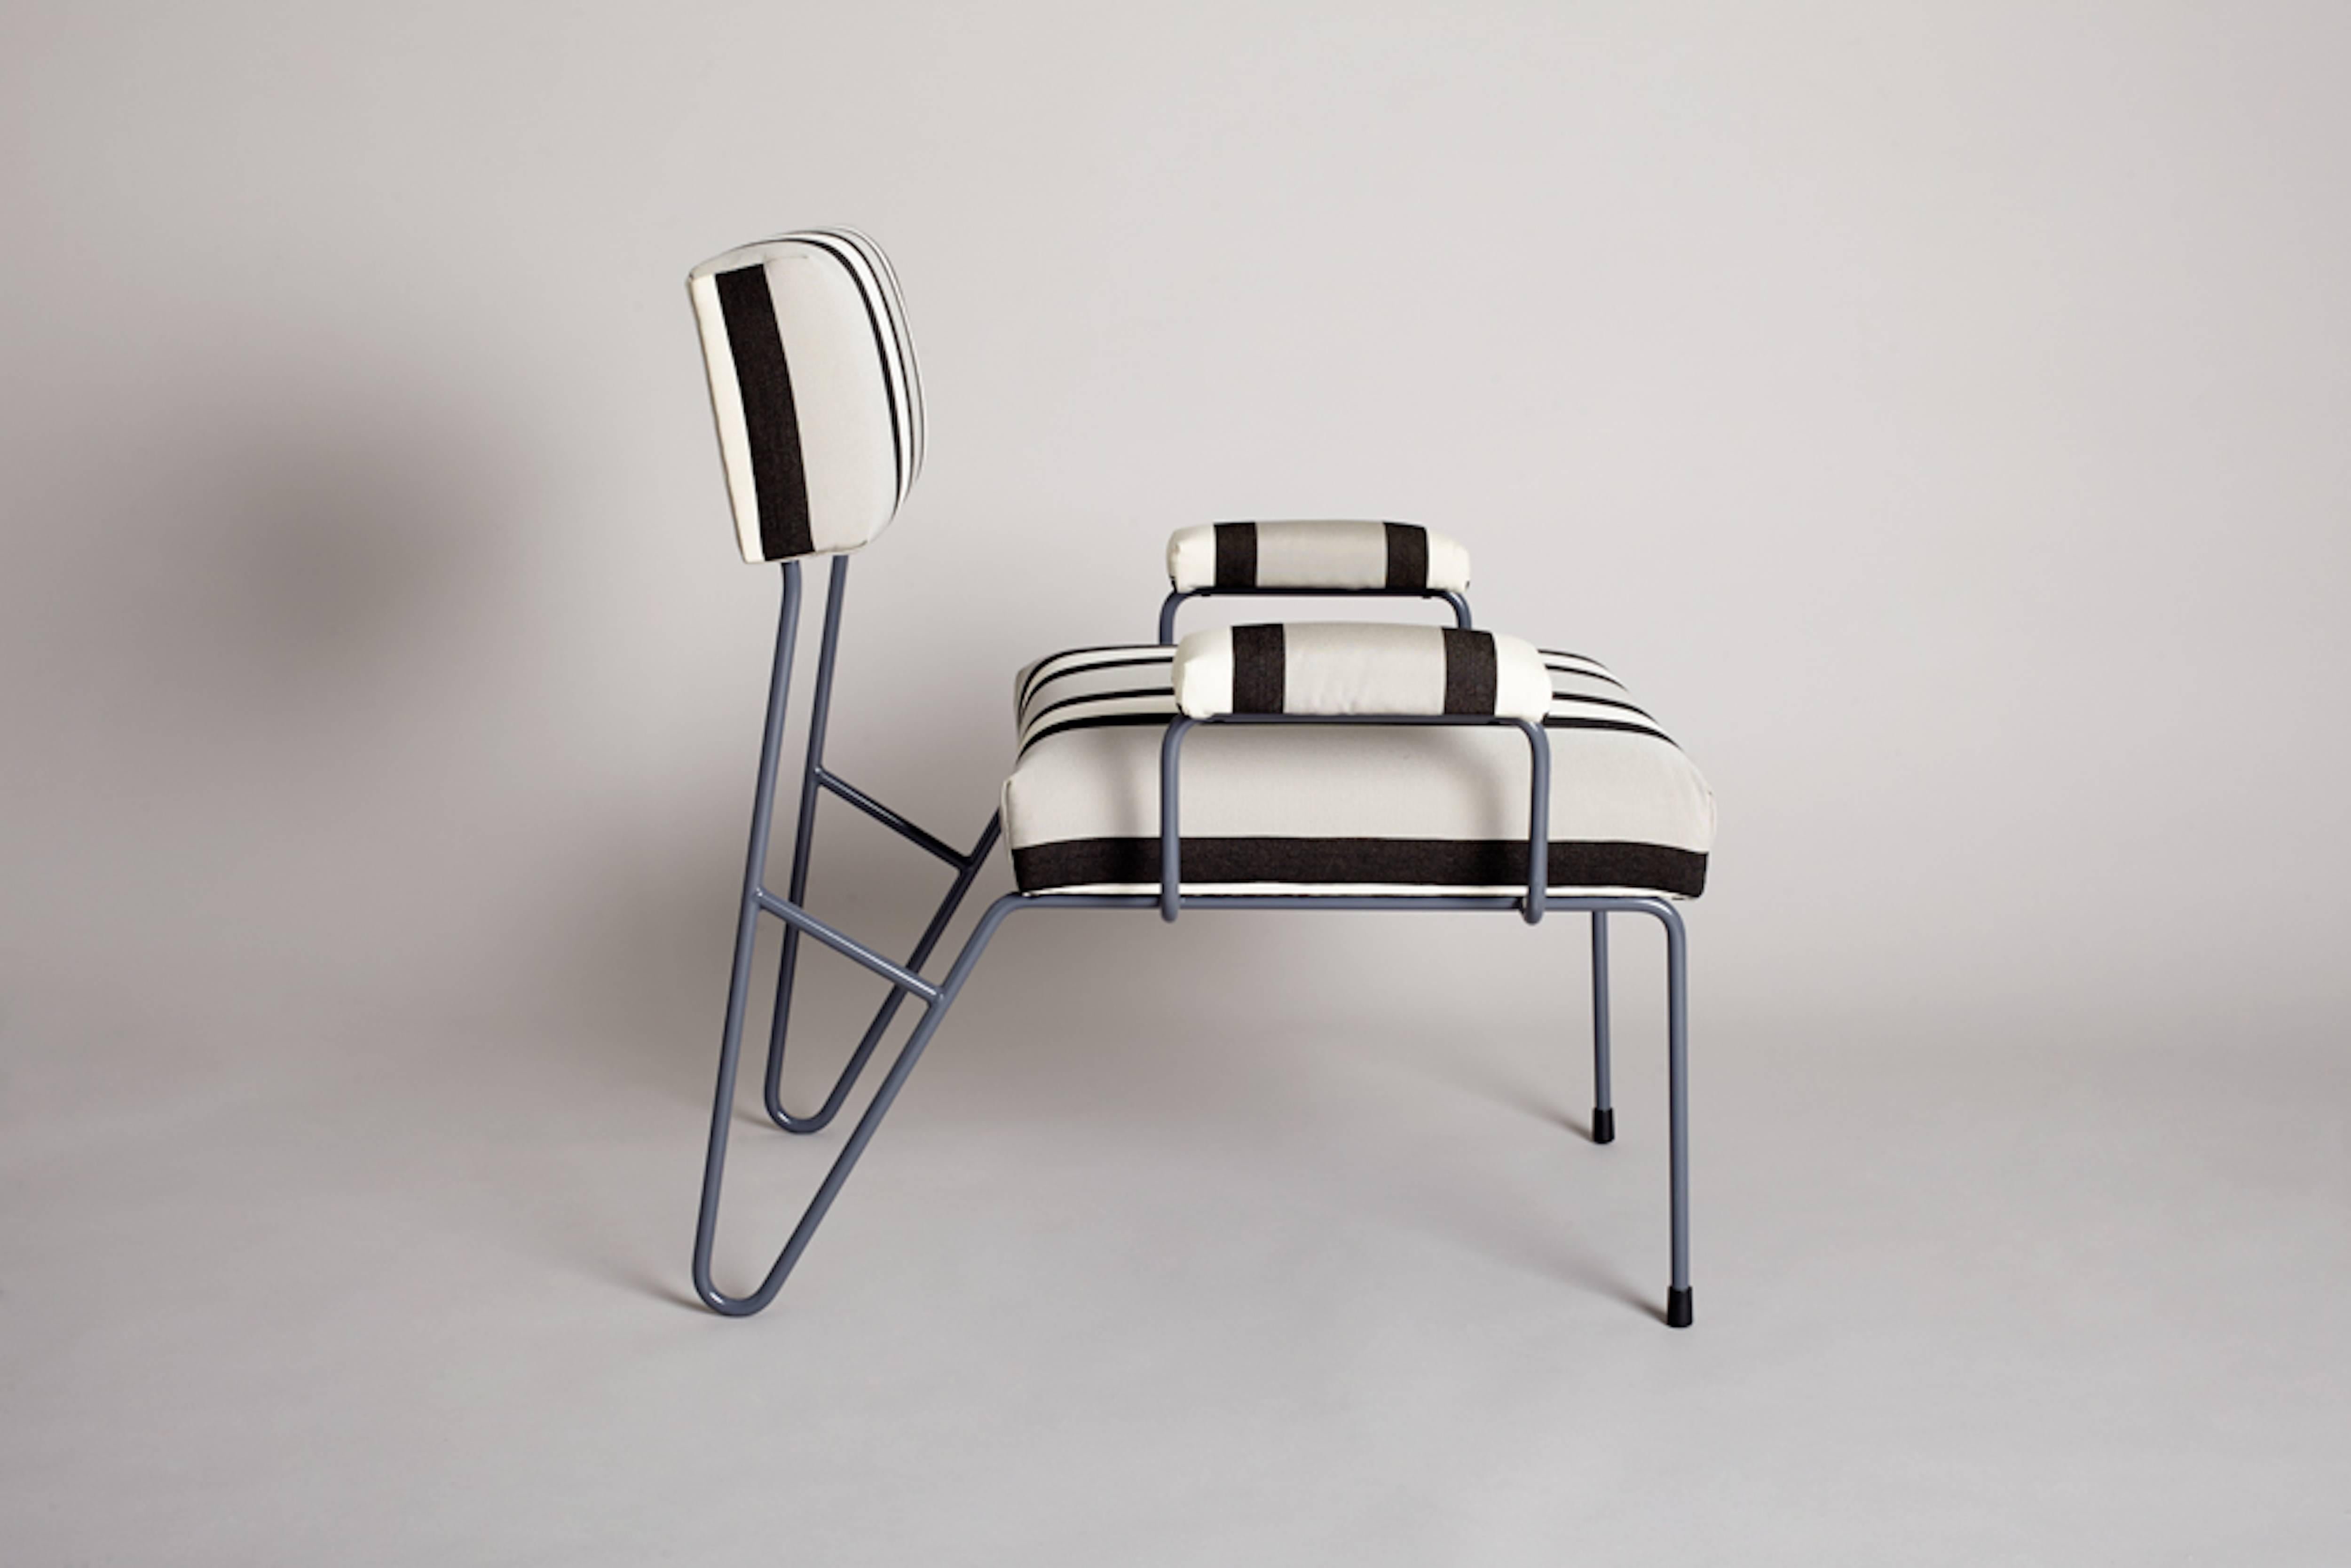 Inspirado en la sencillez del diseño de mediados de siglo, el estilo Alex de asientos relajados se crea utilizando un armazón de acero inoxidable con recubrimiento de polvo y espuma especializada para exteriores. El diseño es minimalista y ligero,